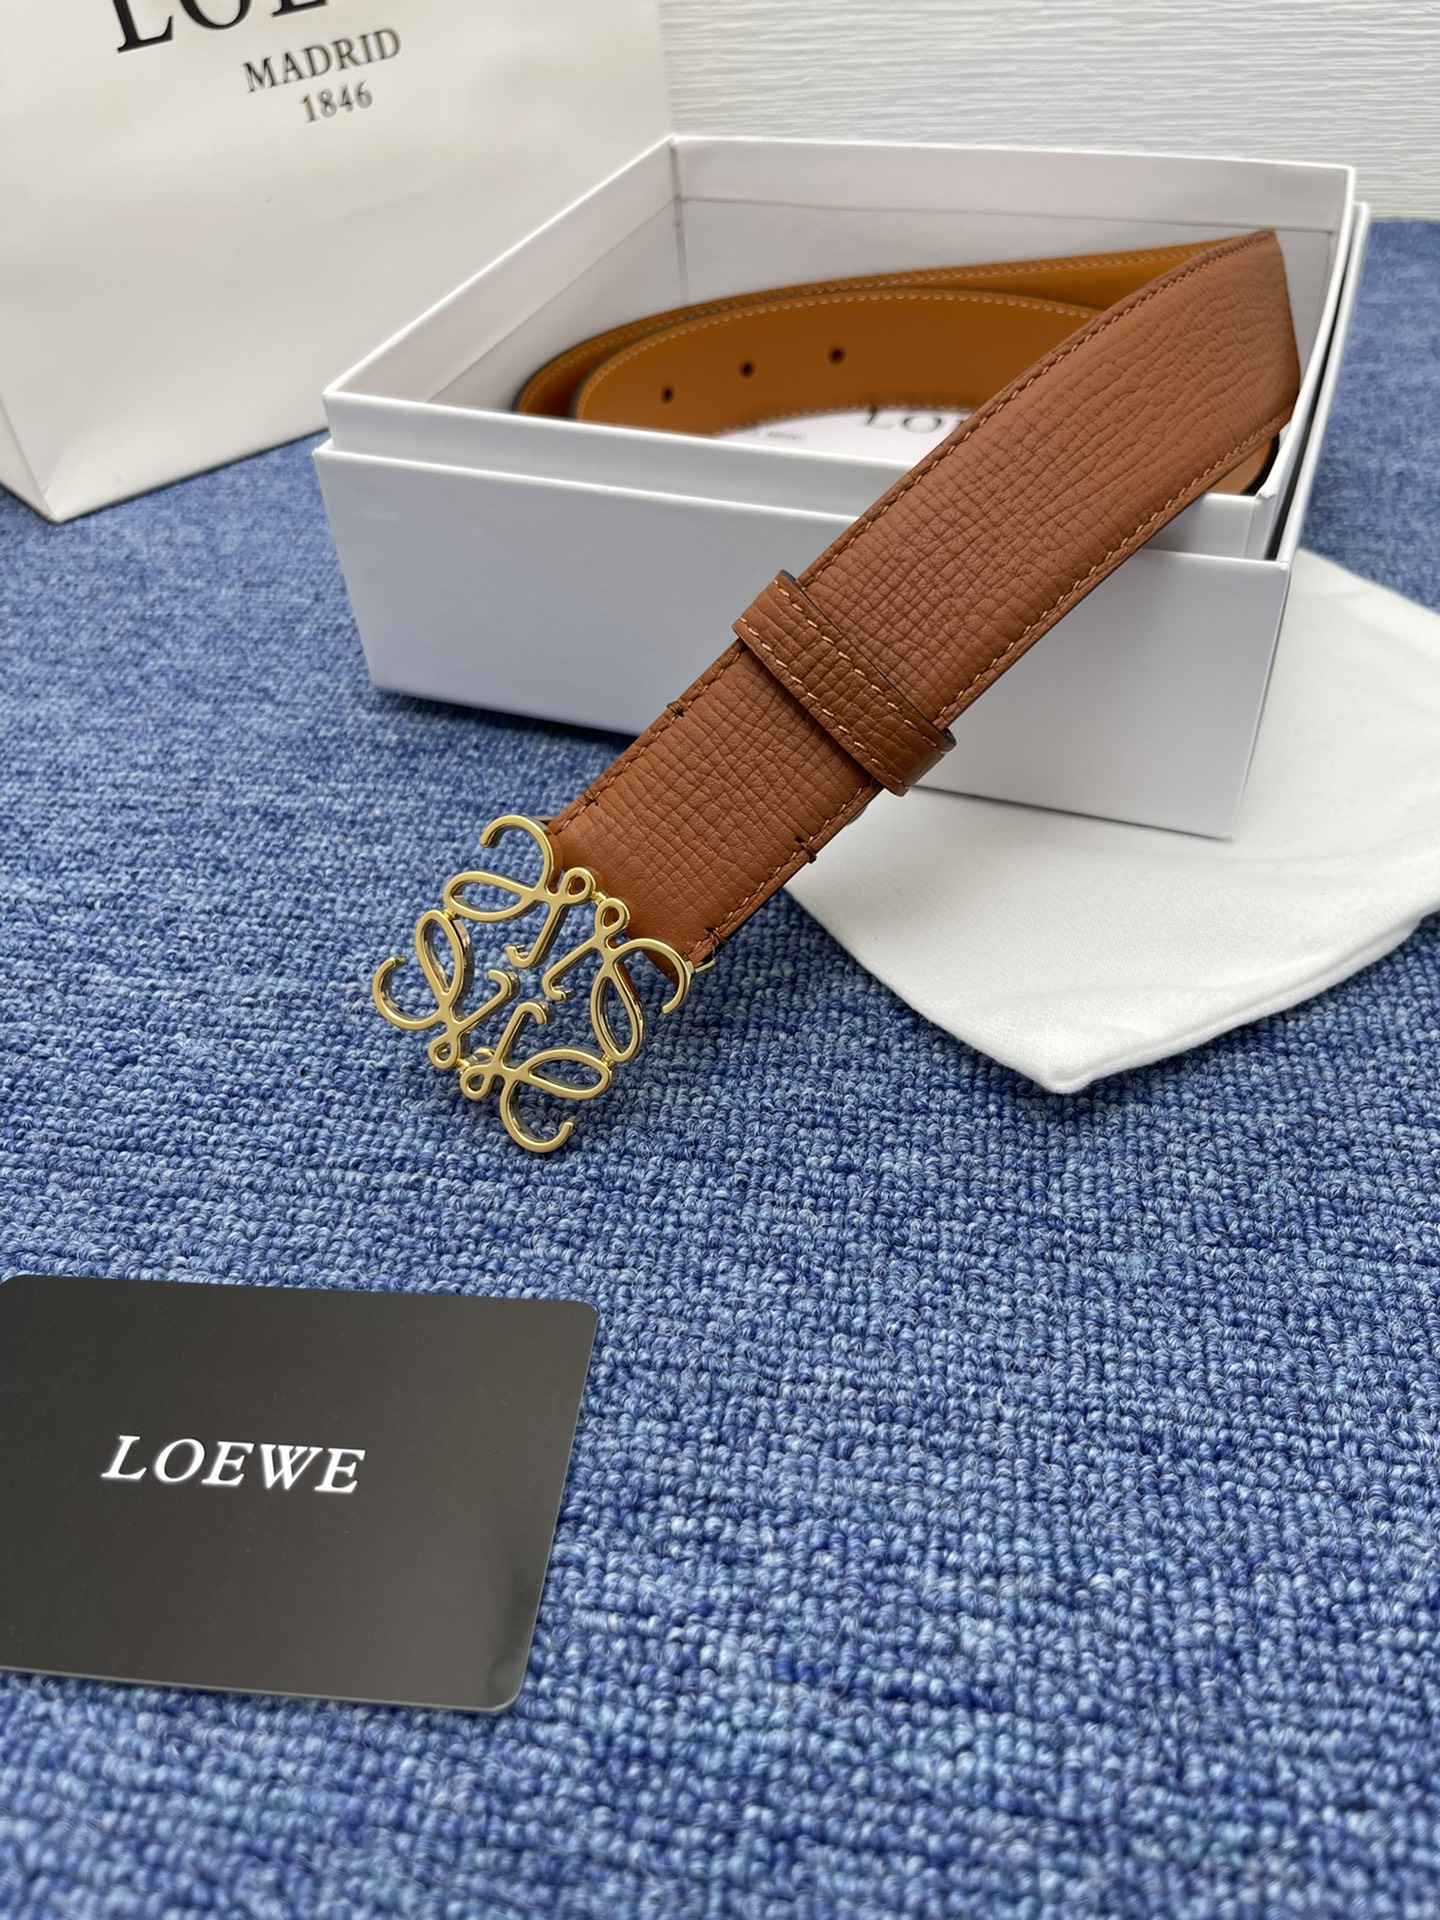 品牌罗意威描述经典系列新品腰带采用小牛皮材质完美搭配手工车线两款经典配色可搭配商务西装或更为休闲的造型腰